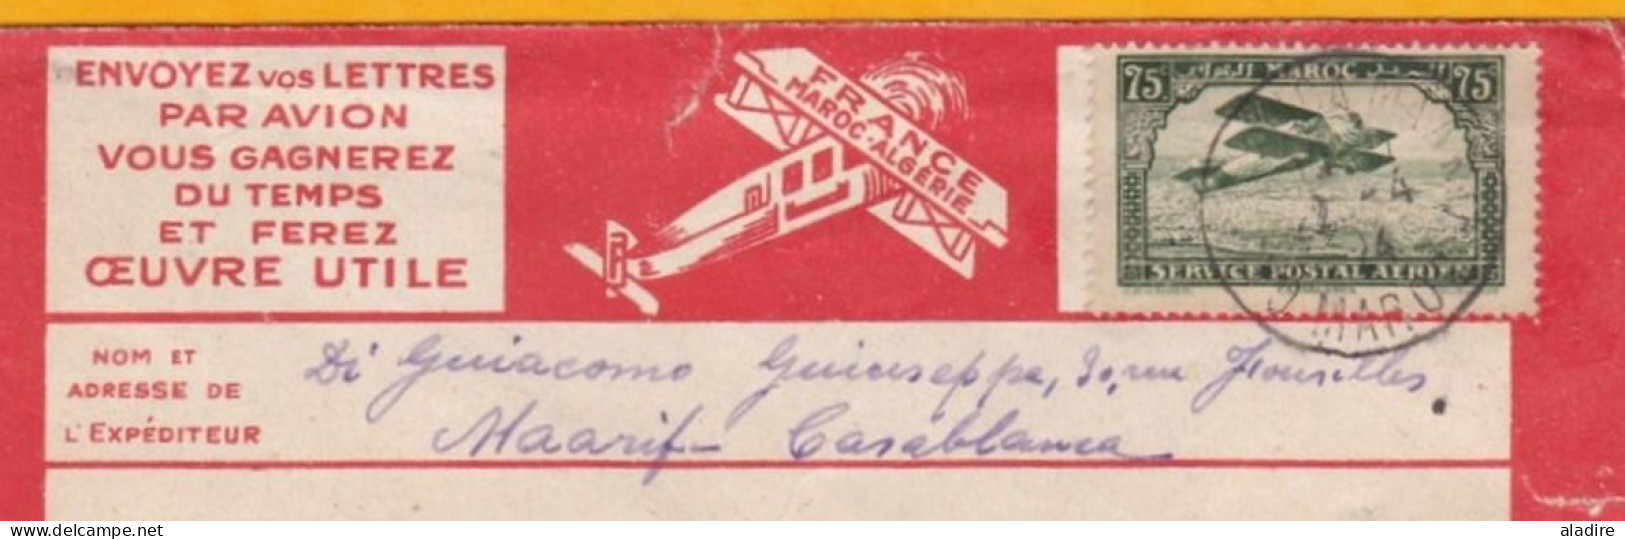 1924 - Enveloppe Par Avion Précurseur Lignes Aériennes Latécoère De Casablanca Maarif Vers Saint Etienne, France - Luftpost